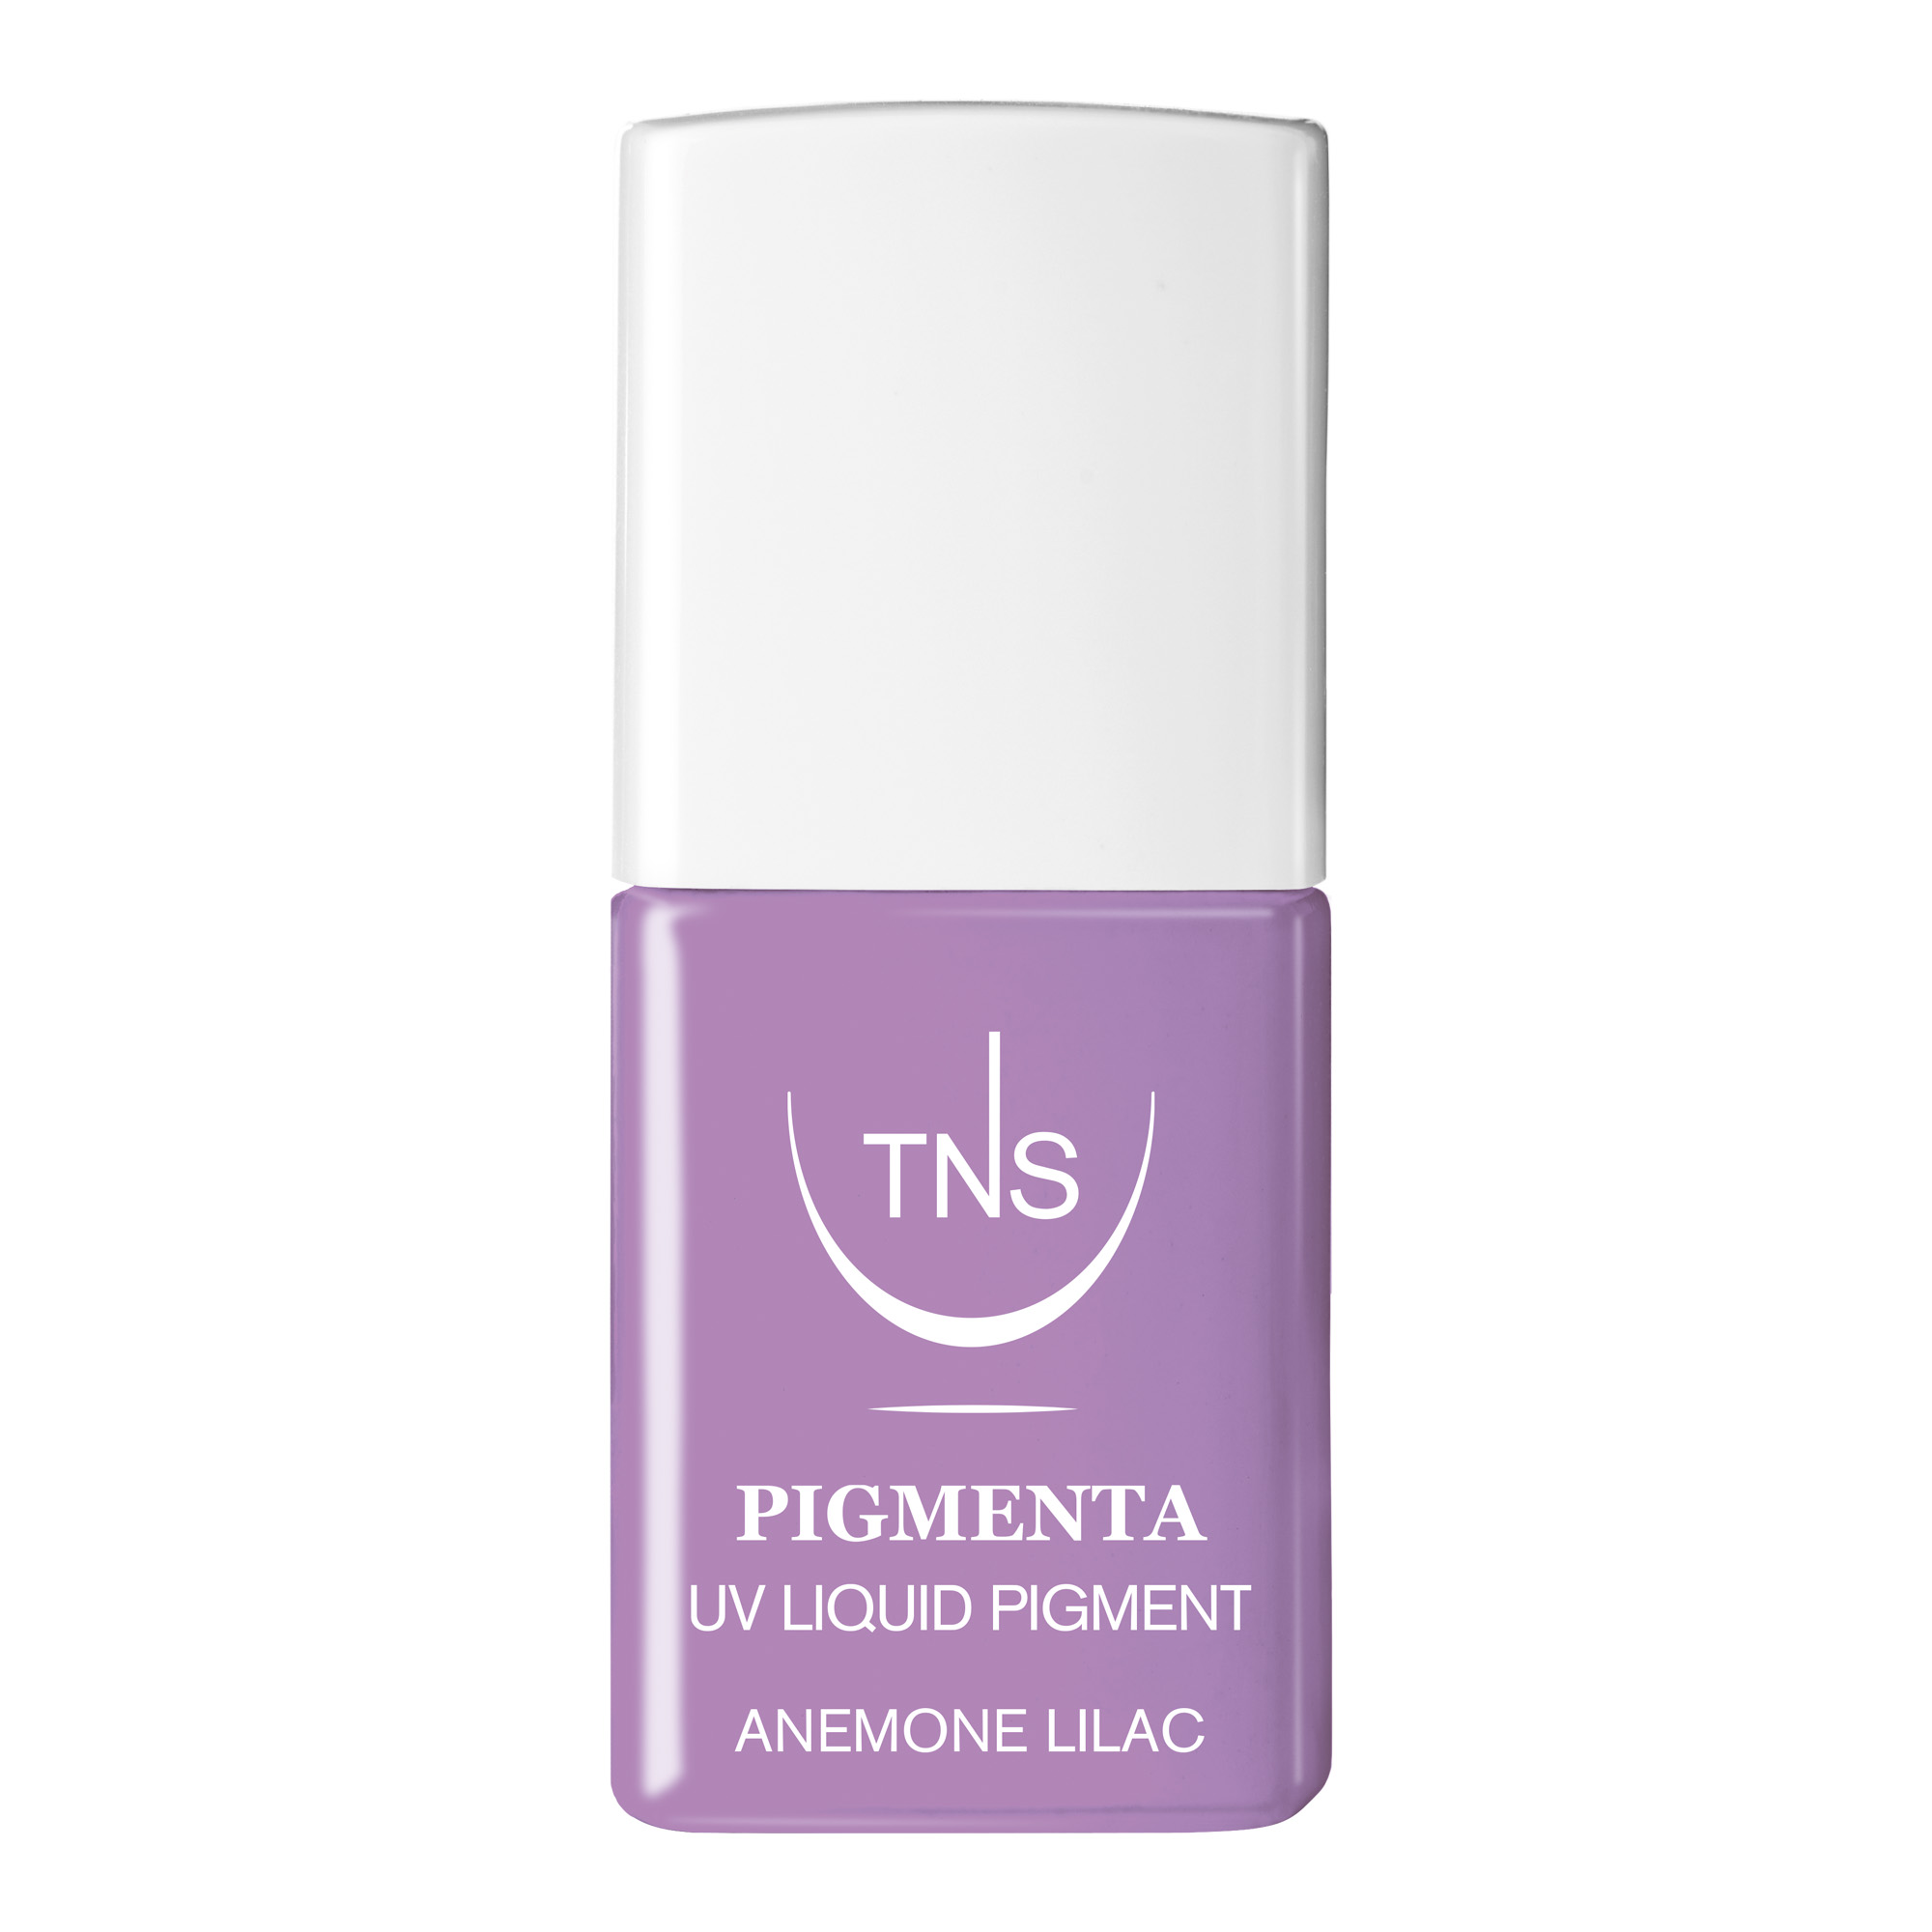 UV Flüssigpigment Anemone Flieder 10 ml Pigmenta TNS